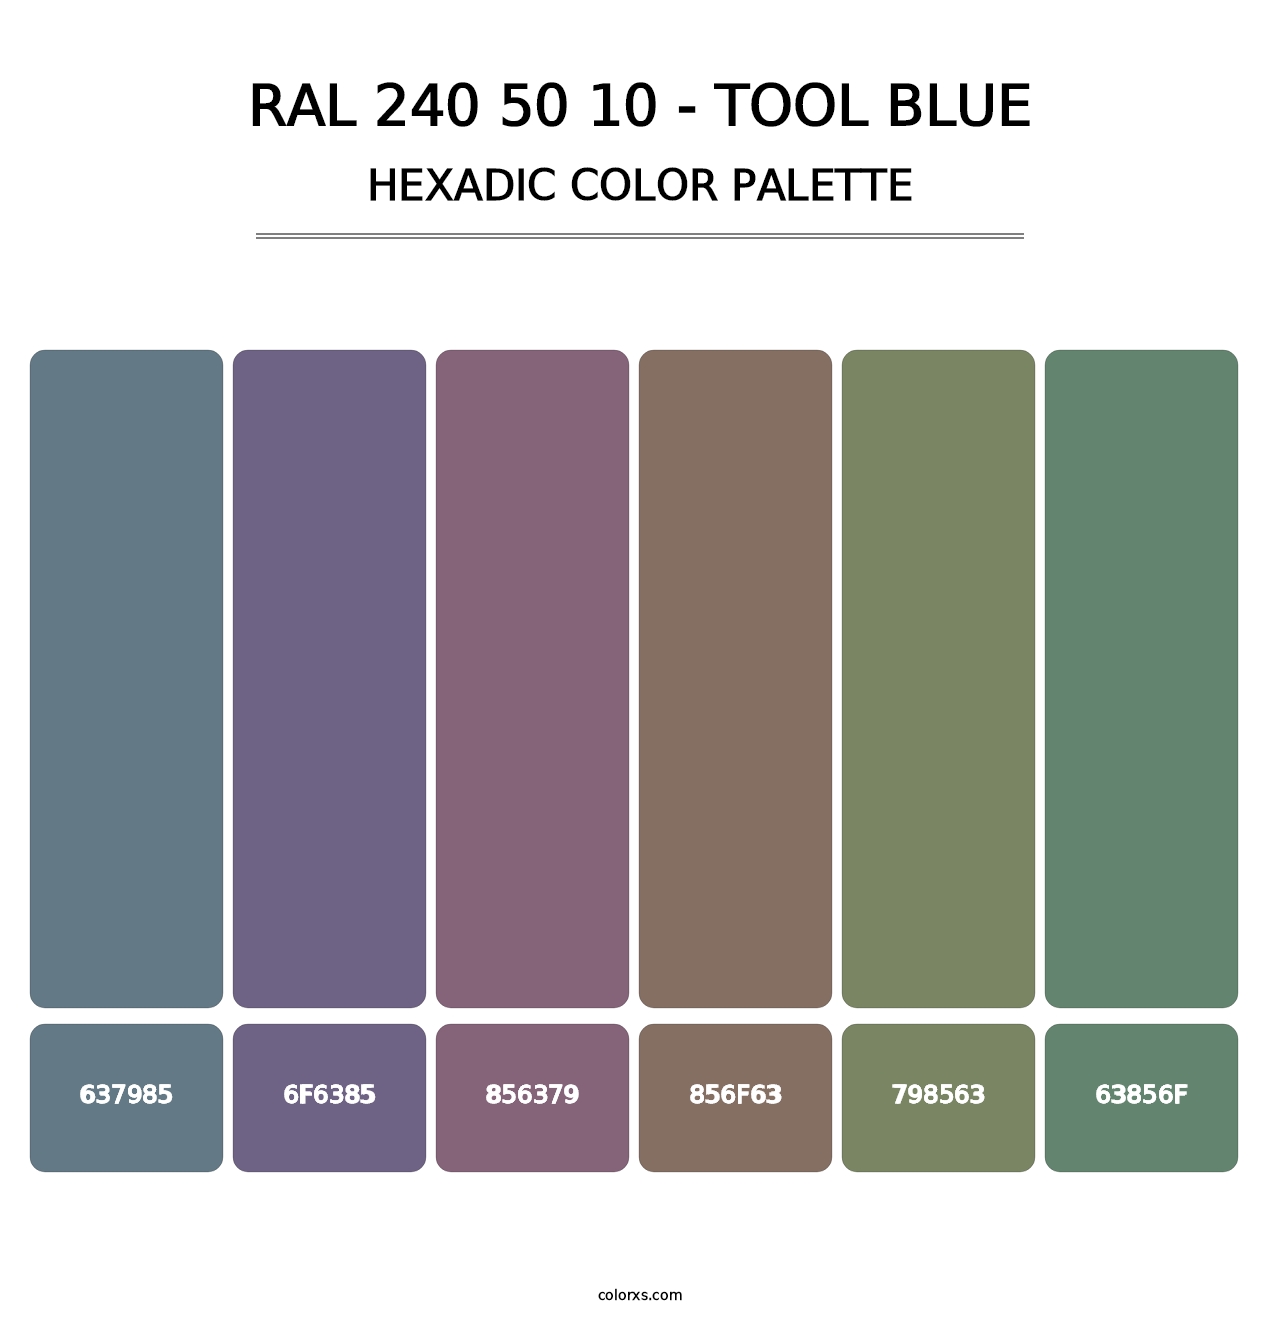 RAL 240 50 10 - Tool Blue - Hexadic Color Palette